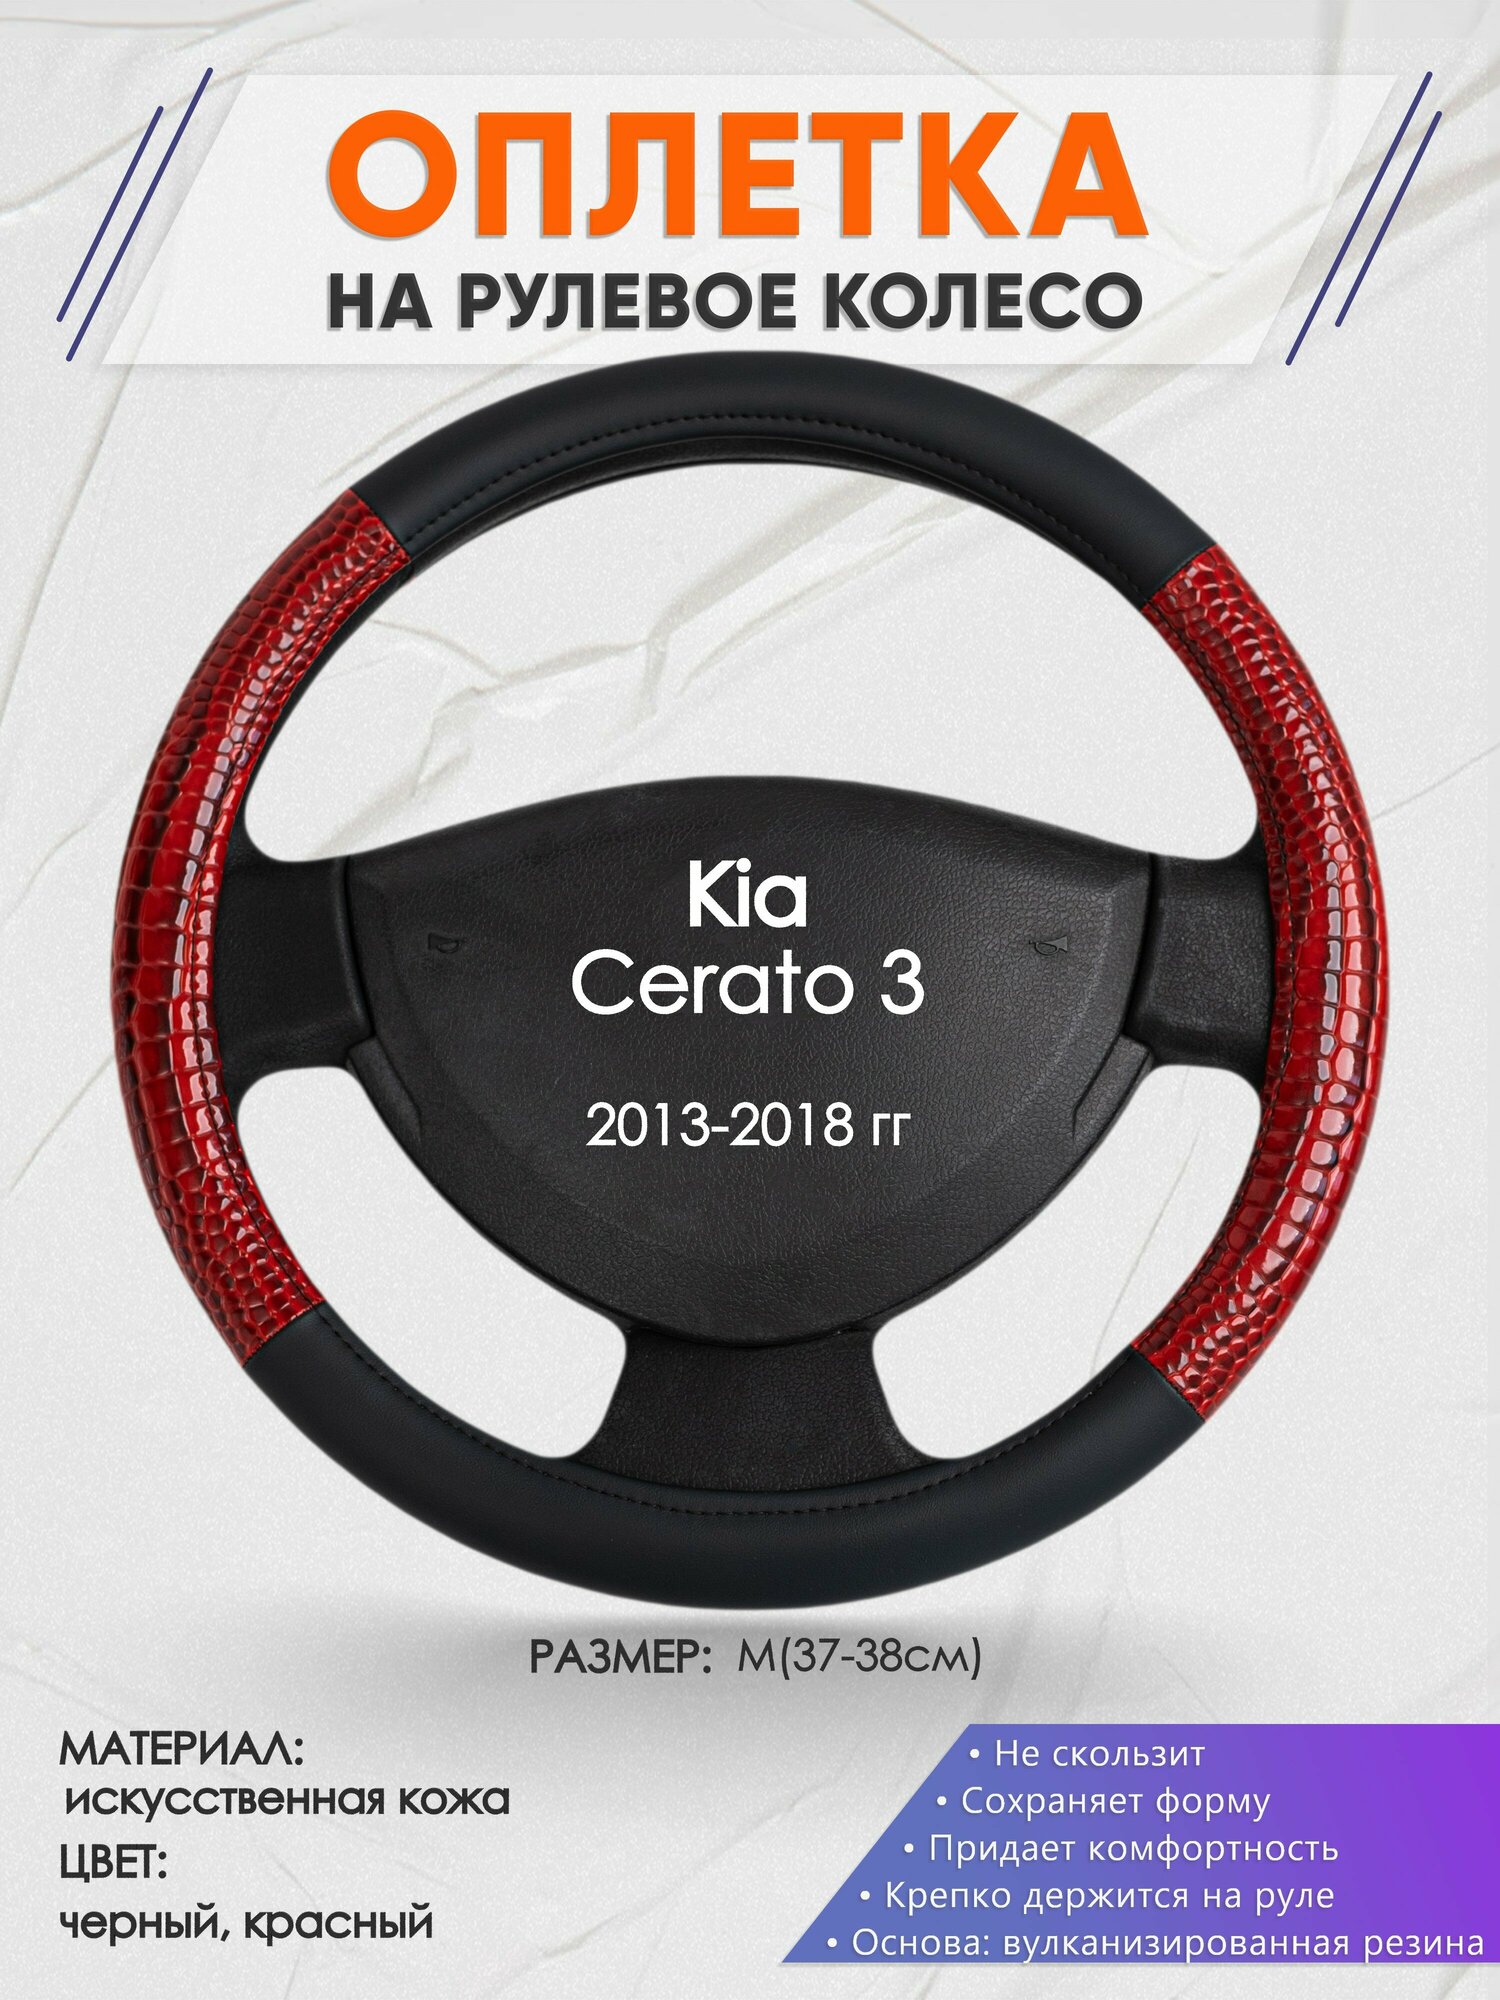 Оплетка на руль для Kia Cerato 3(Киа Церато 3) 2013-2018, M(37-38см), Искусственная кожа 16